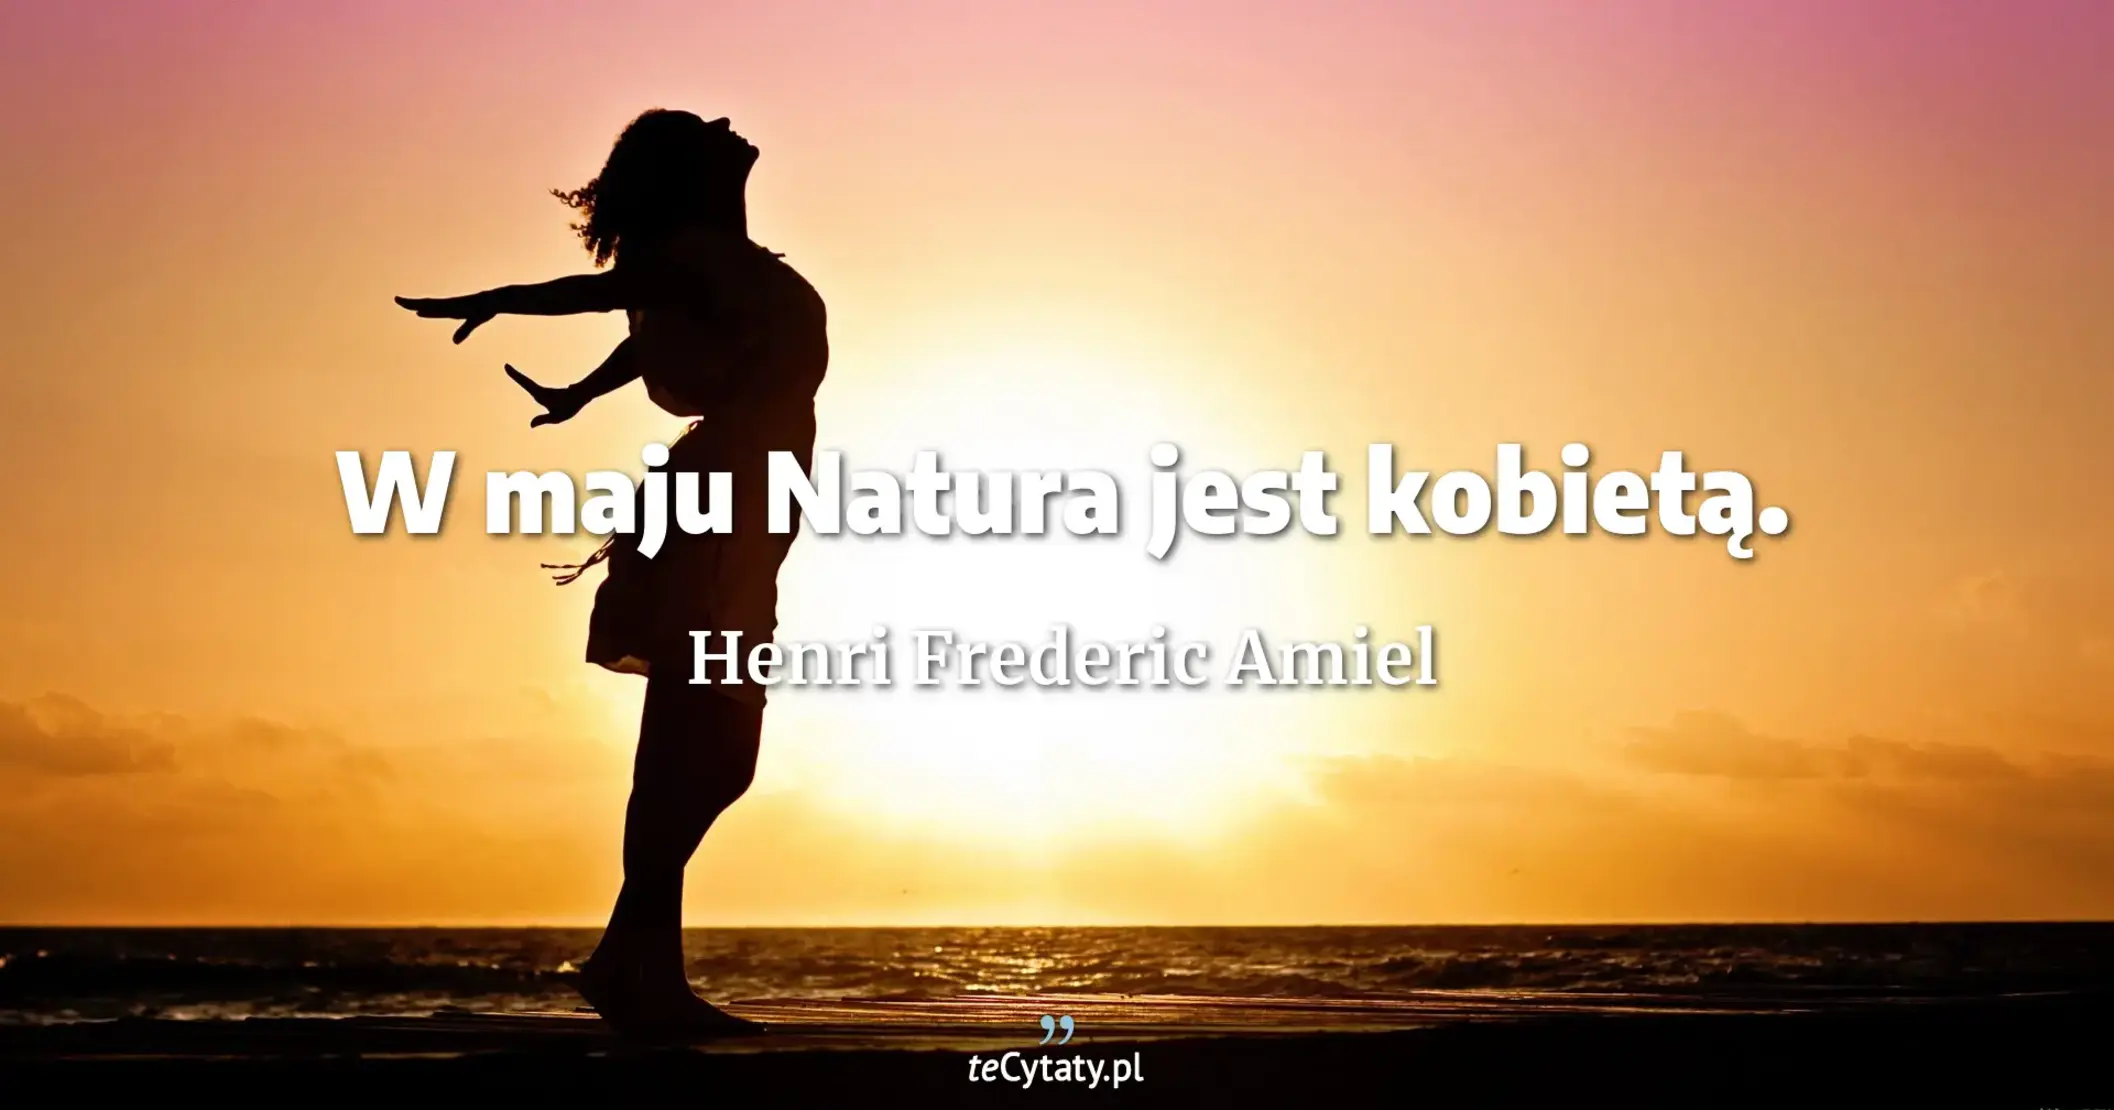 W maju Natura jest kobietą. - Henri Frederic Amiel